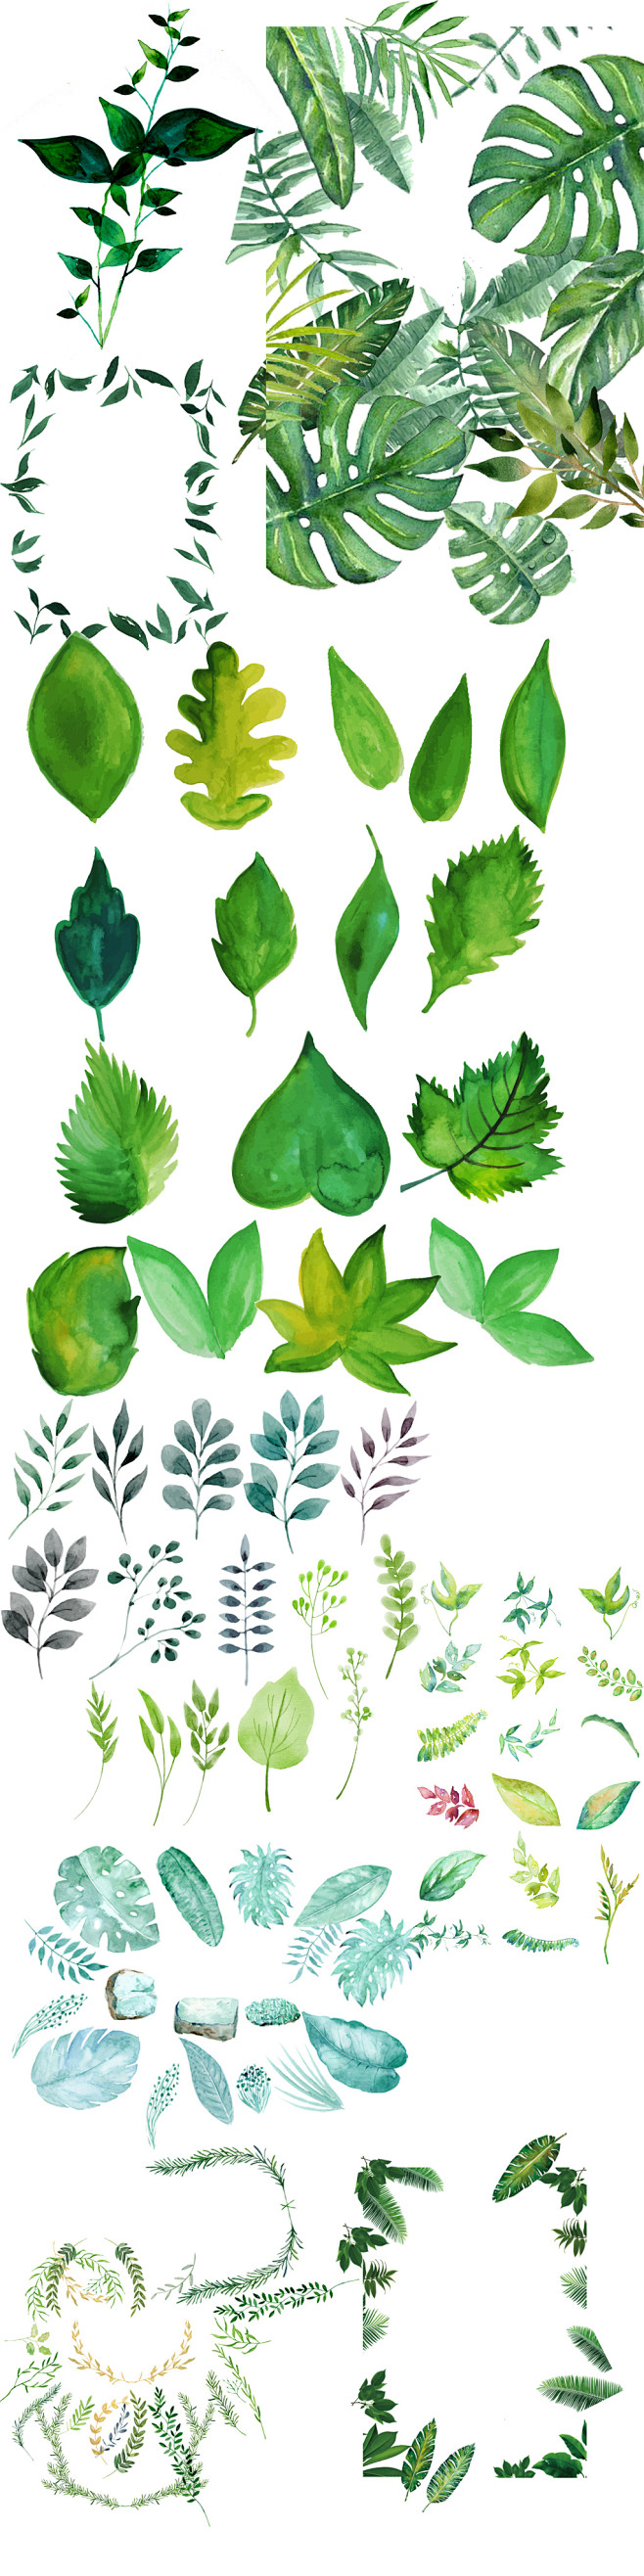 清新北欧美式手绘插画水彩绿植设计背景素材